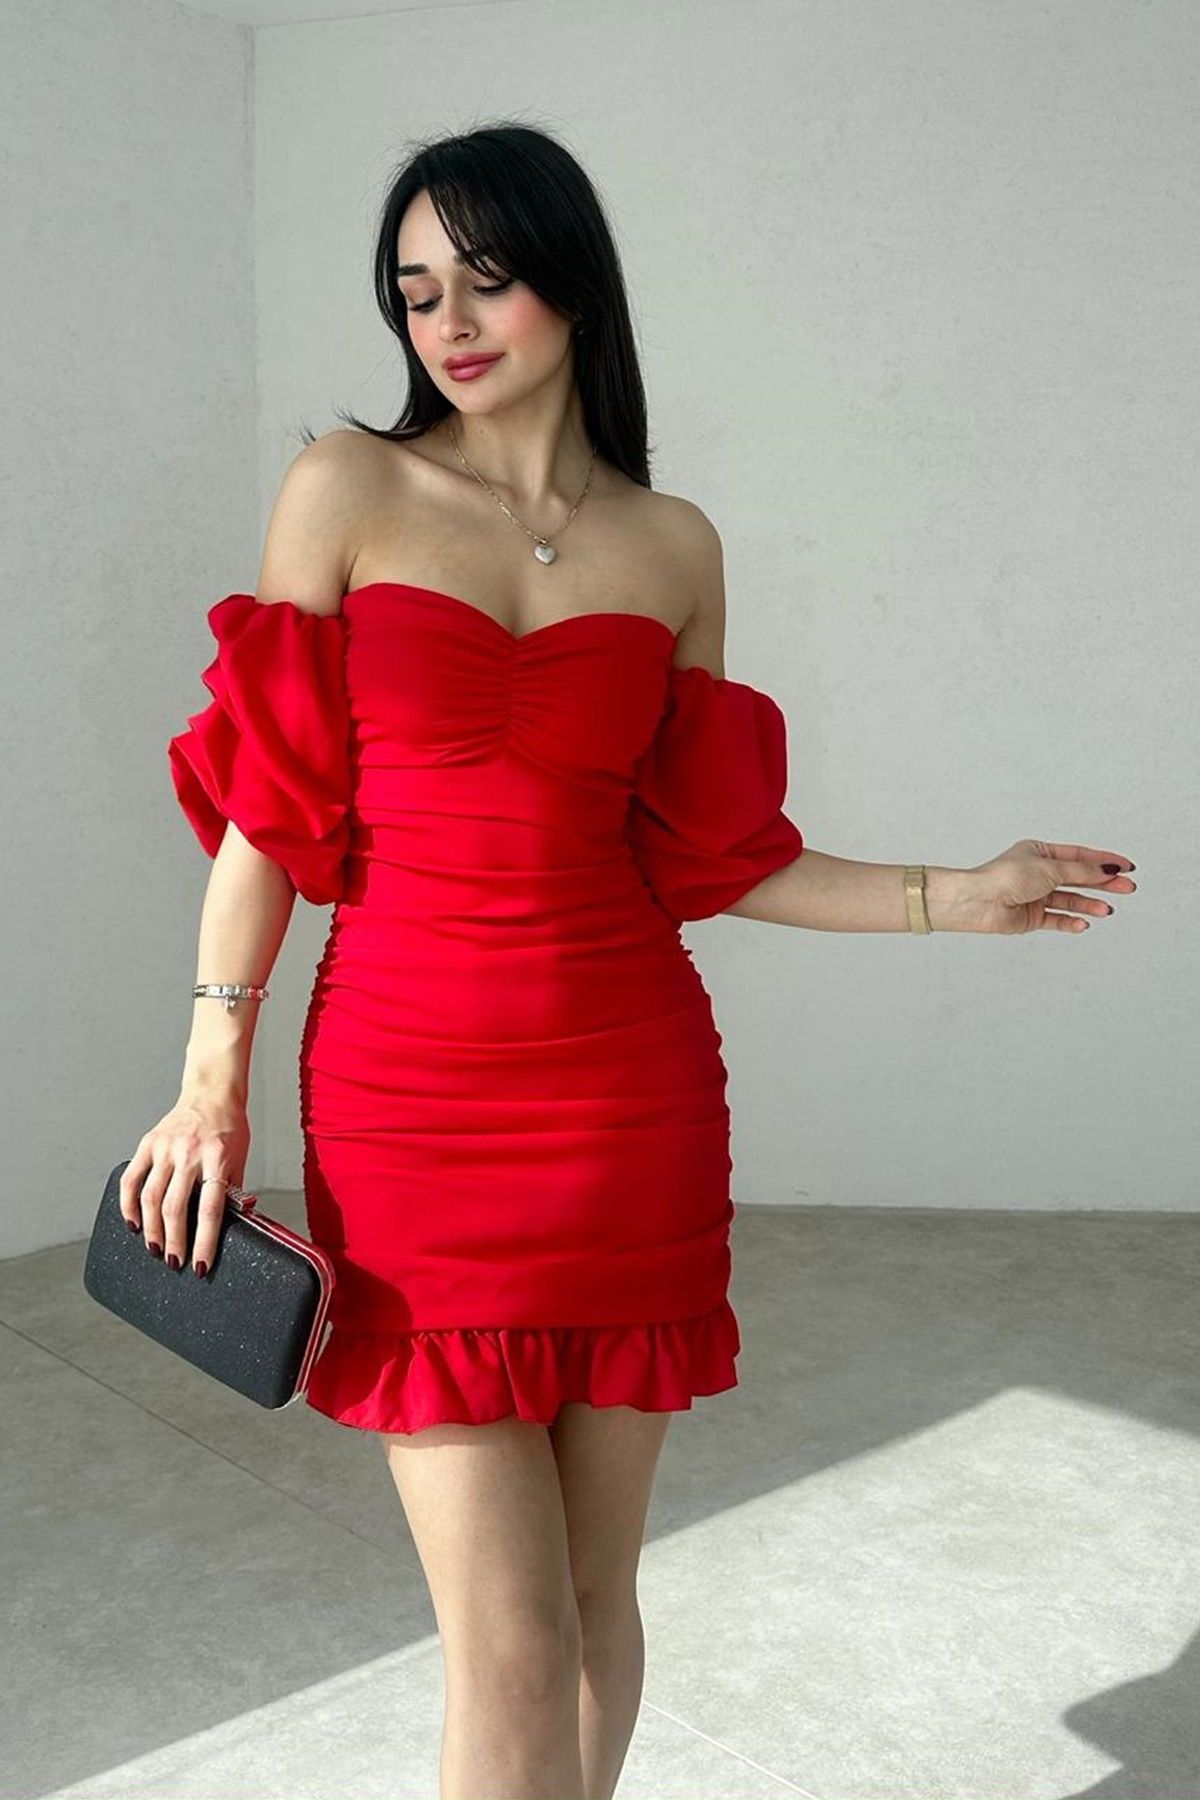 lovebox Kadın Krep Kumaş Straplez Yaka Şık Kol ve Büzgü Tasarımlı Kırmızı Mini Abiye Elbise 081